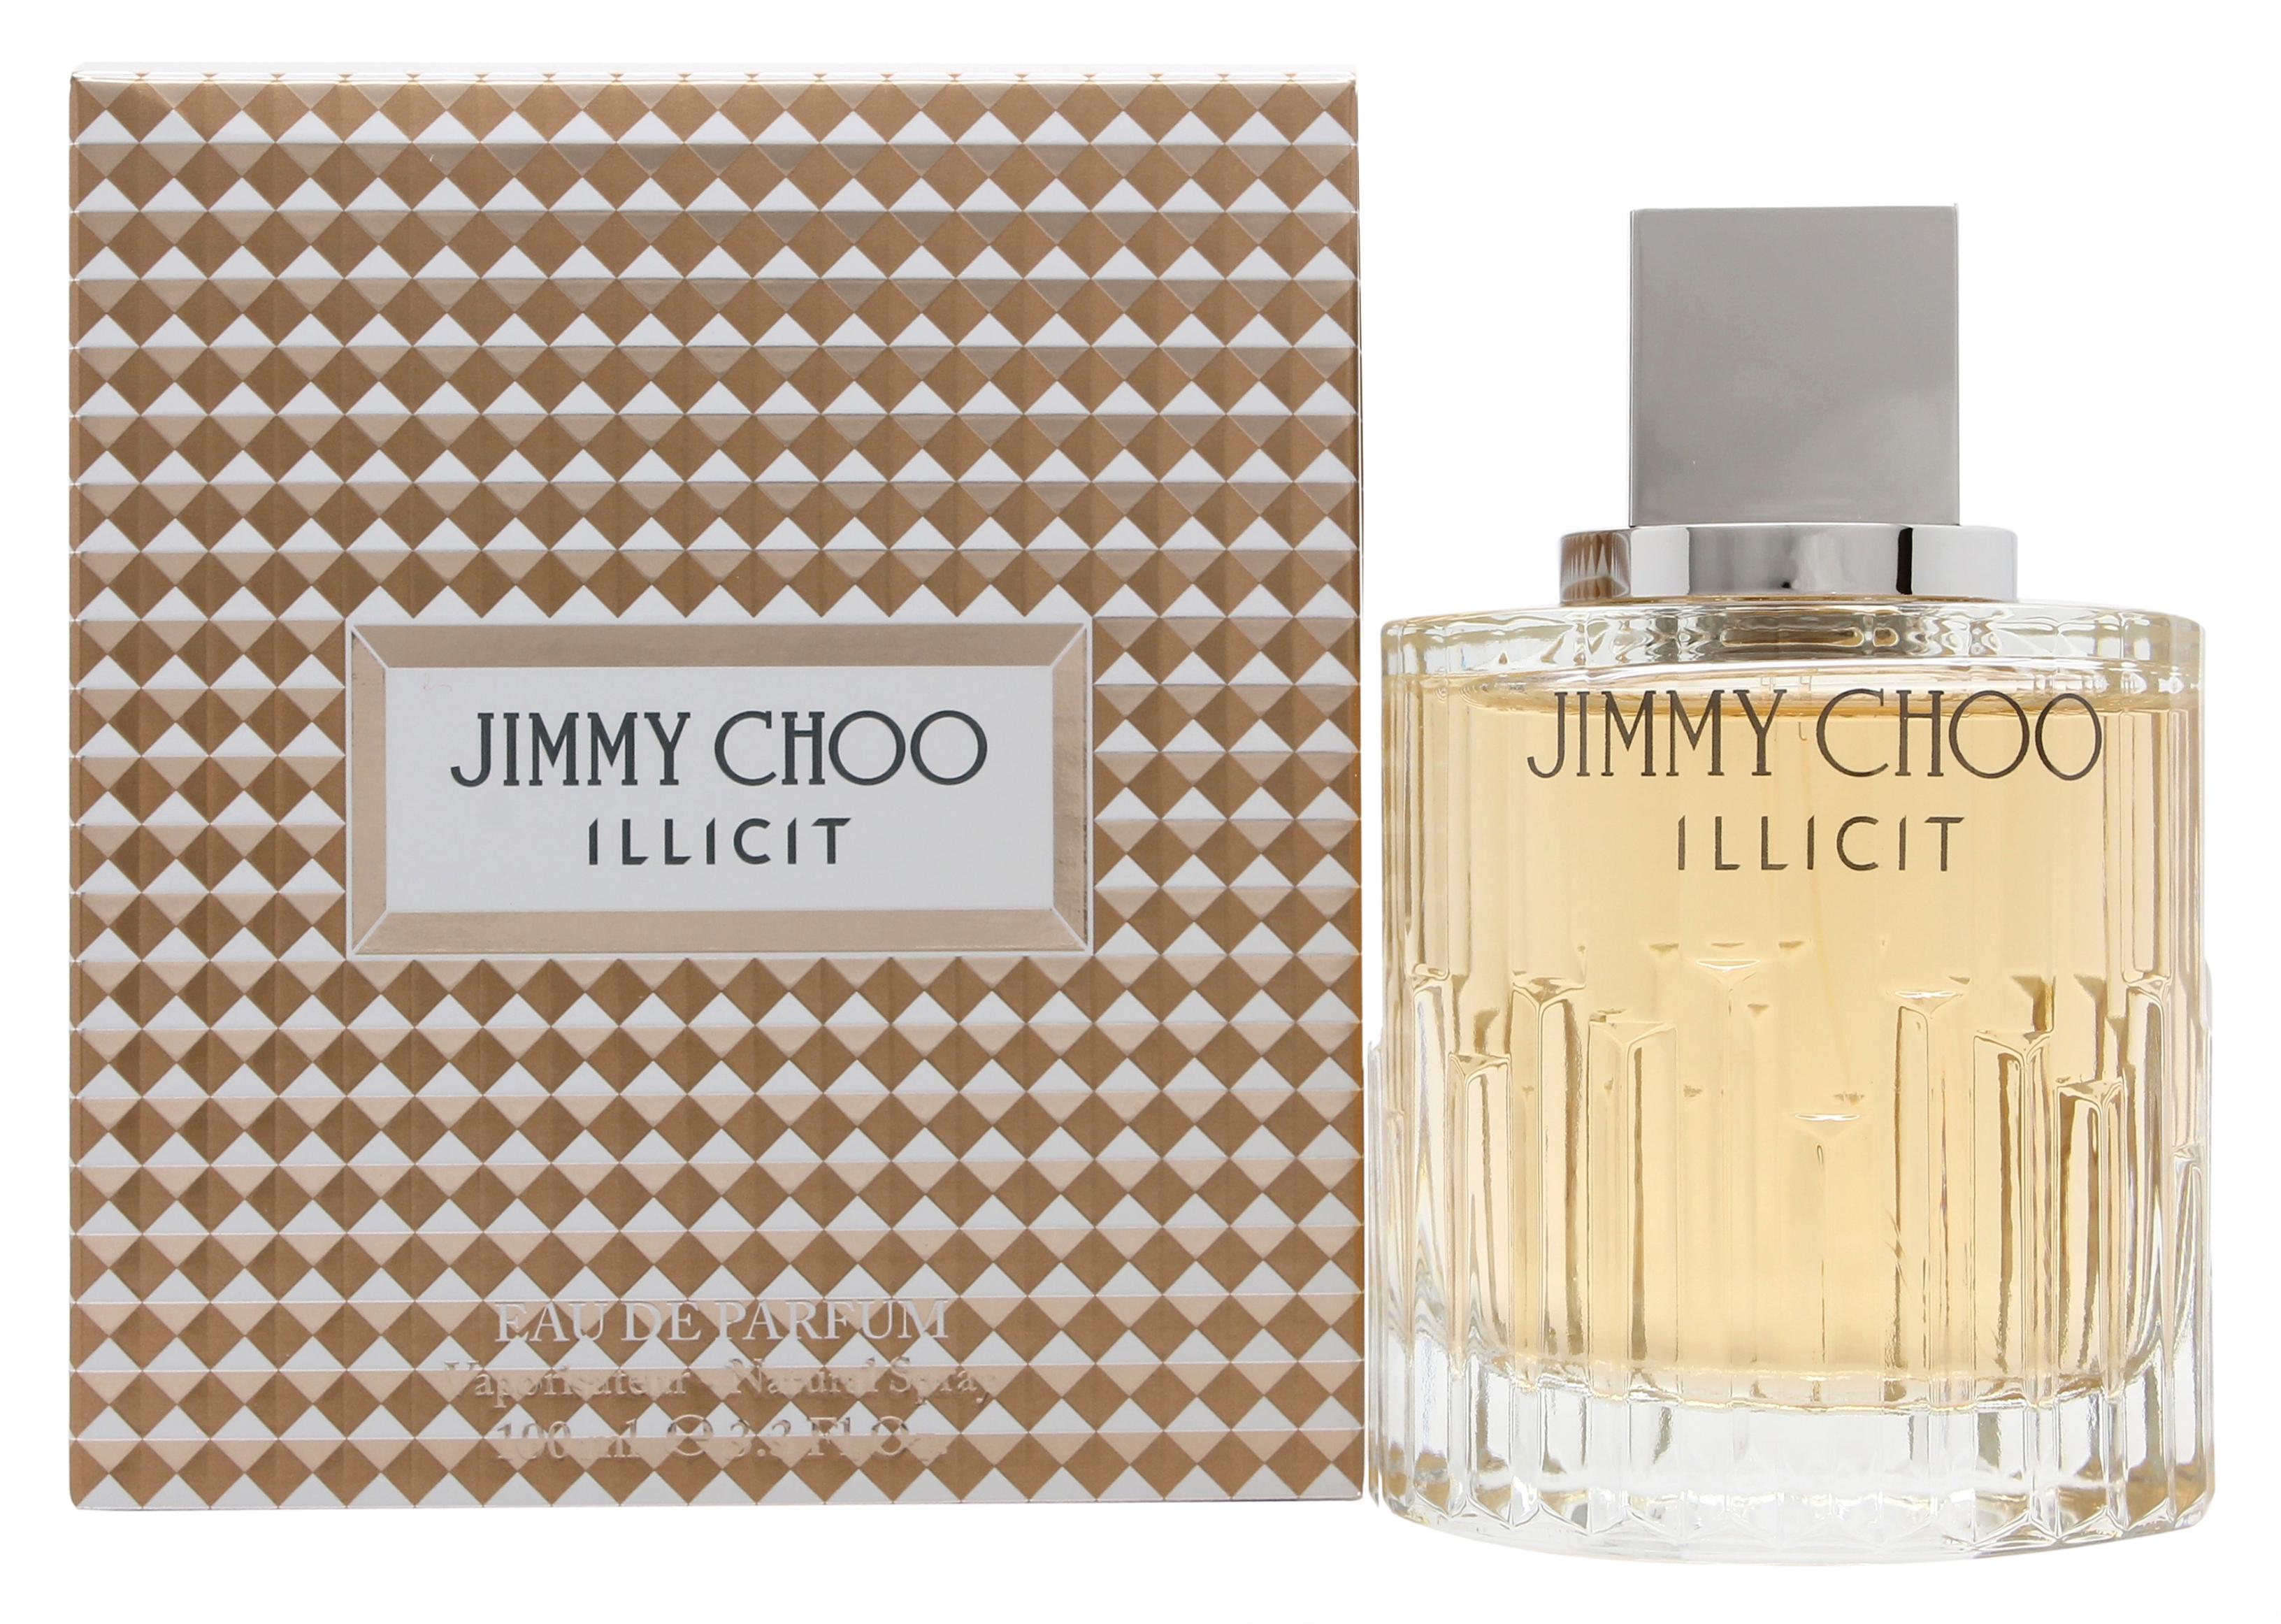 View Jimmy Choo Illicit Eau de Parfum 100ml Spray information